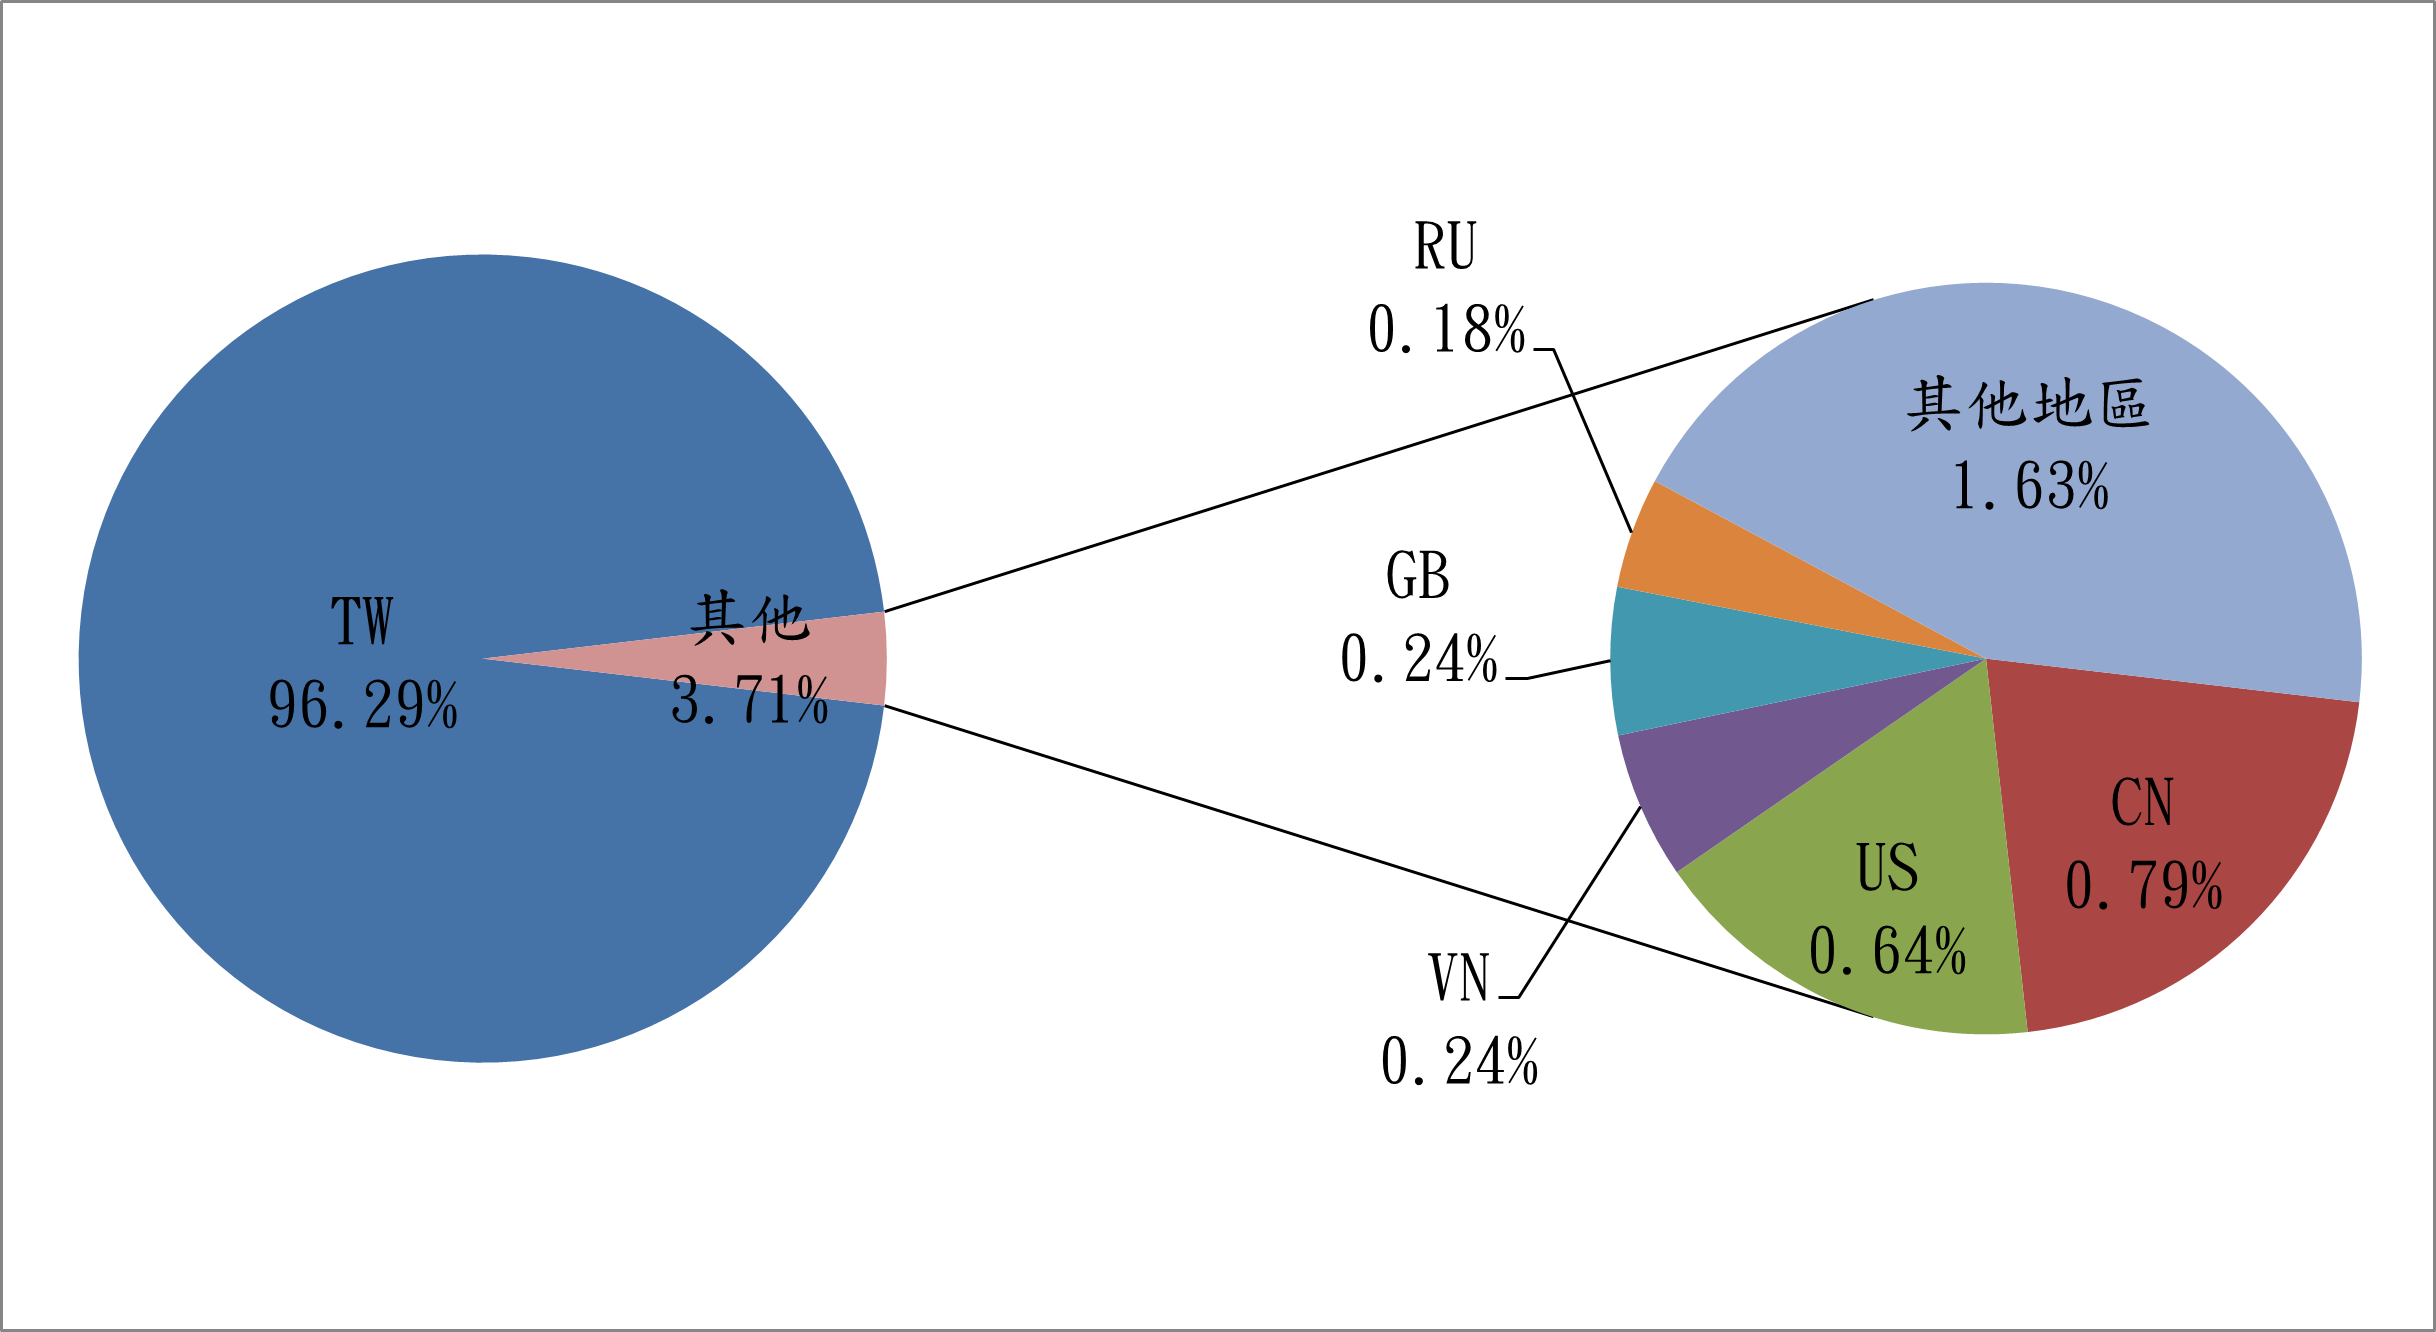 TW96.29% 其他3.71% RU0.18% GB0.24% VN0.24% US0.64% CN0.79% 其他地區1.63%